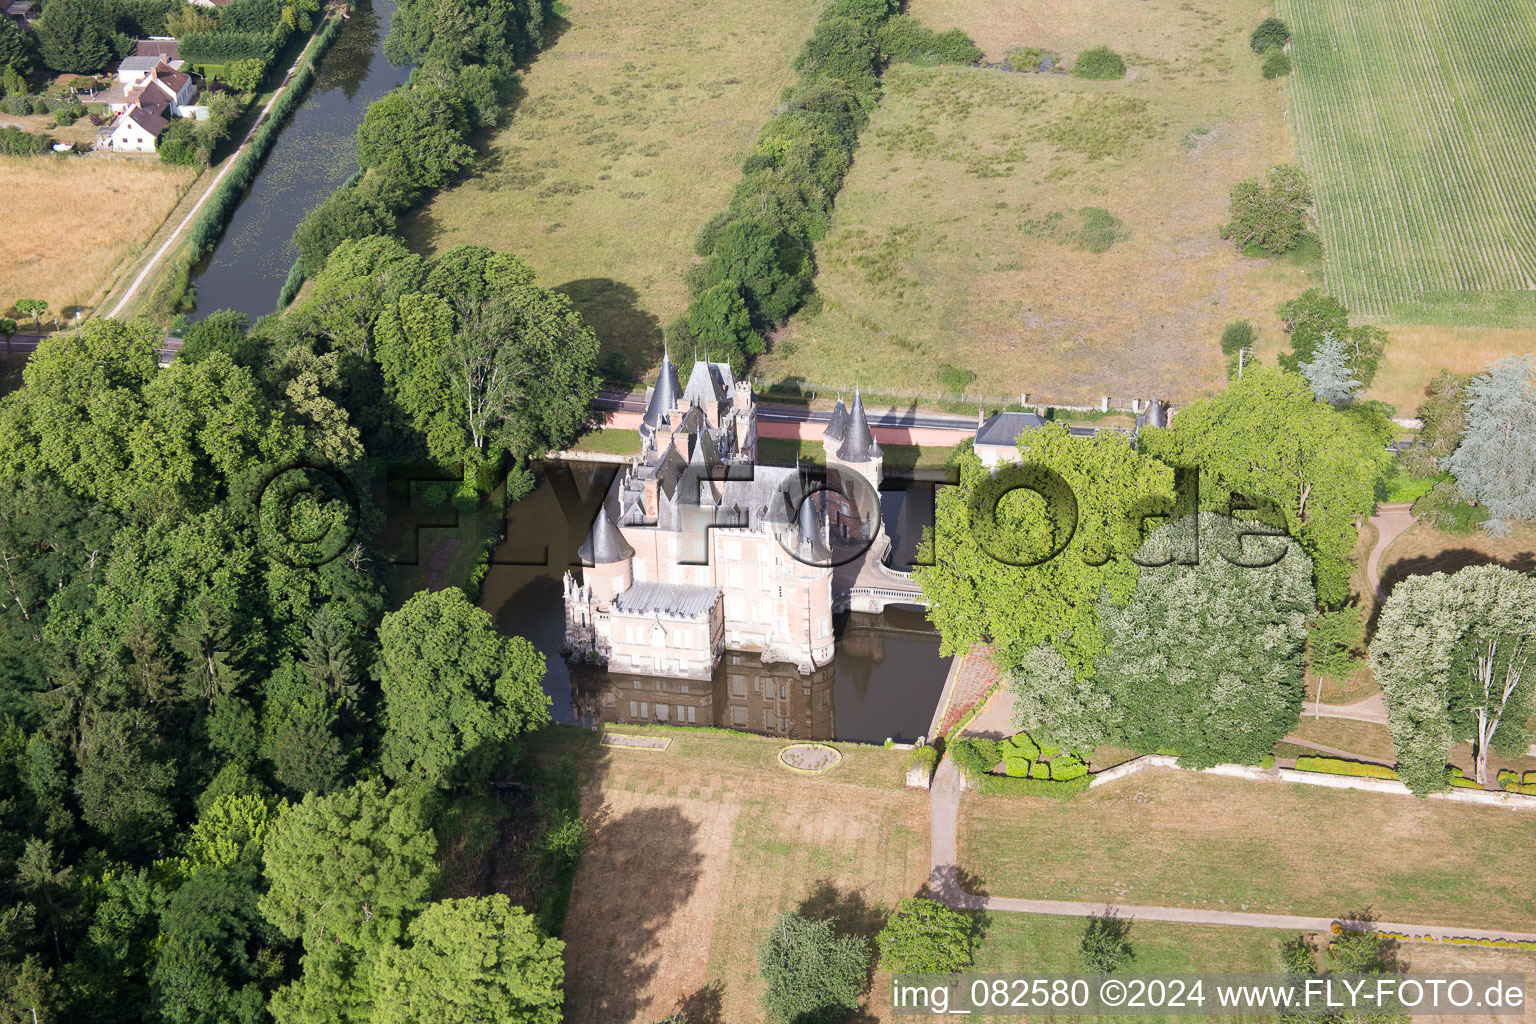 Château de Combreux im Bundesland Loiret, Frankreich von oben gesehen